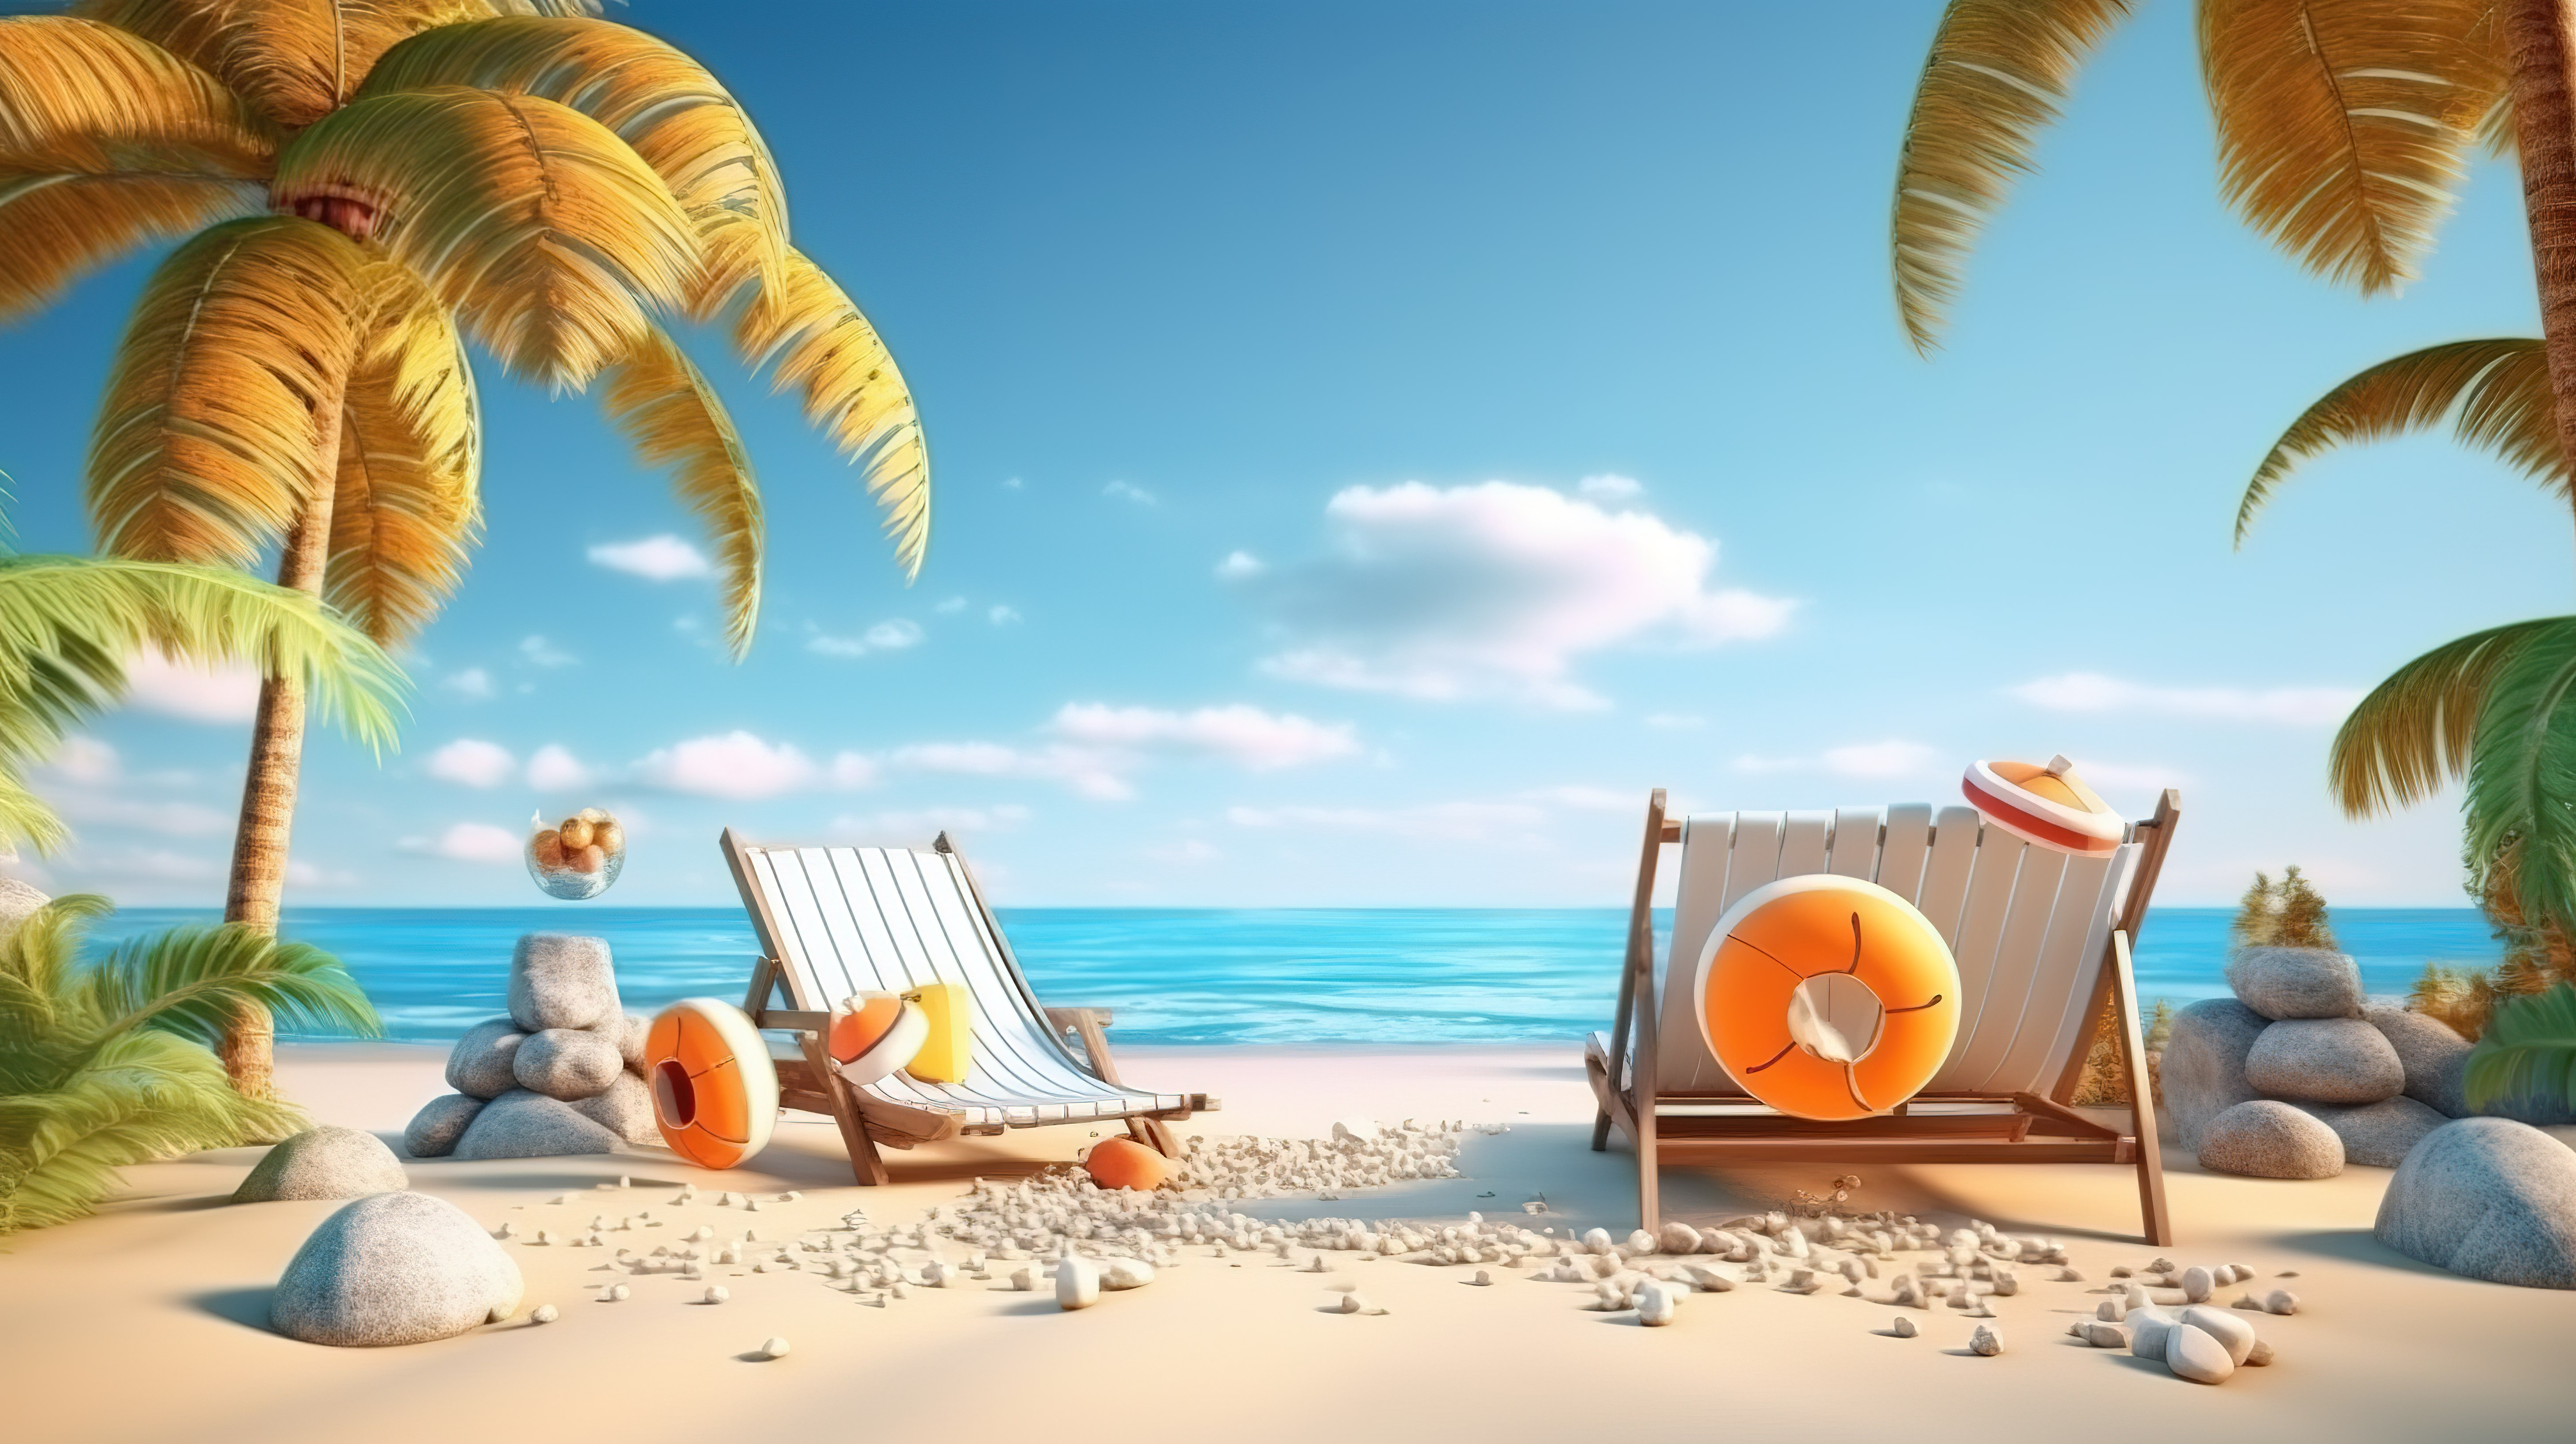 3D 插图的优质照片展示了令人惊叹的夏季海滩场景视图图片